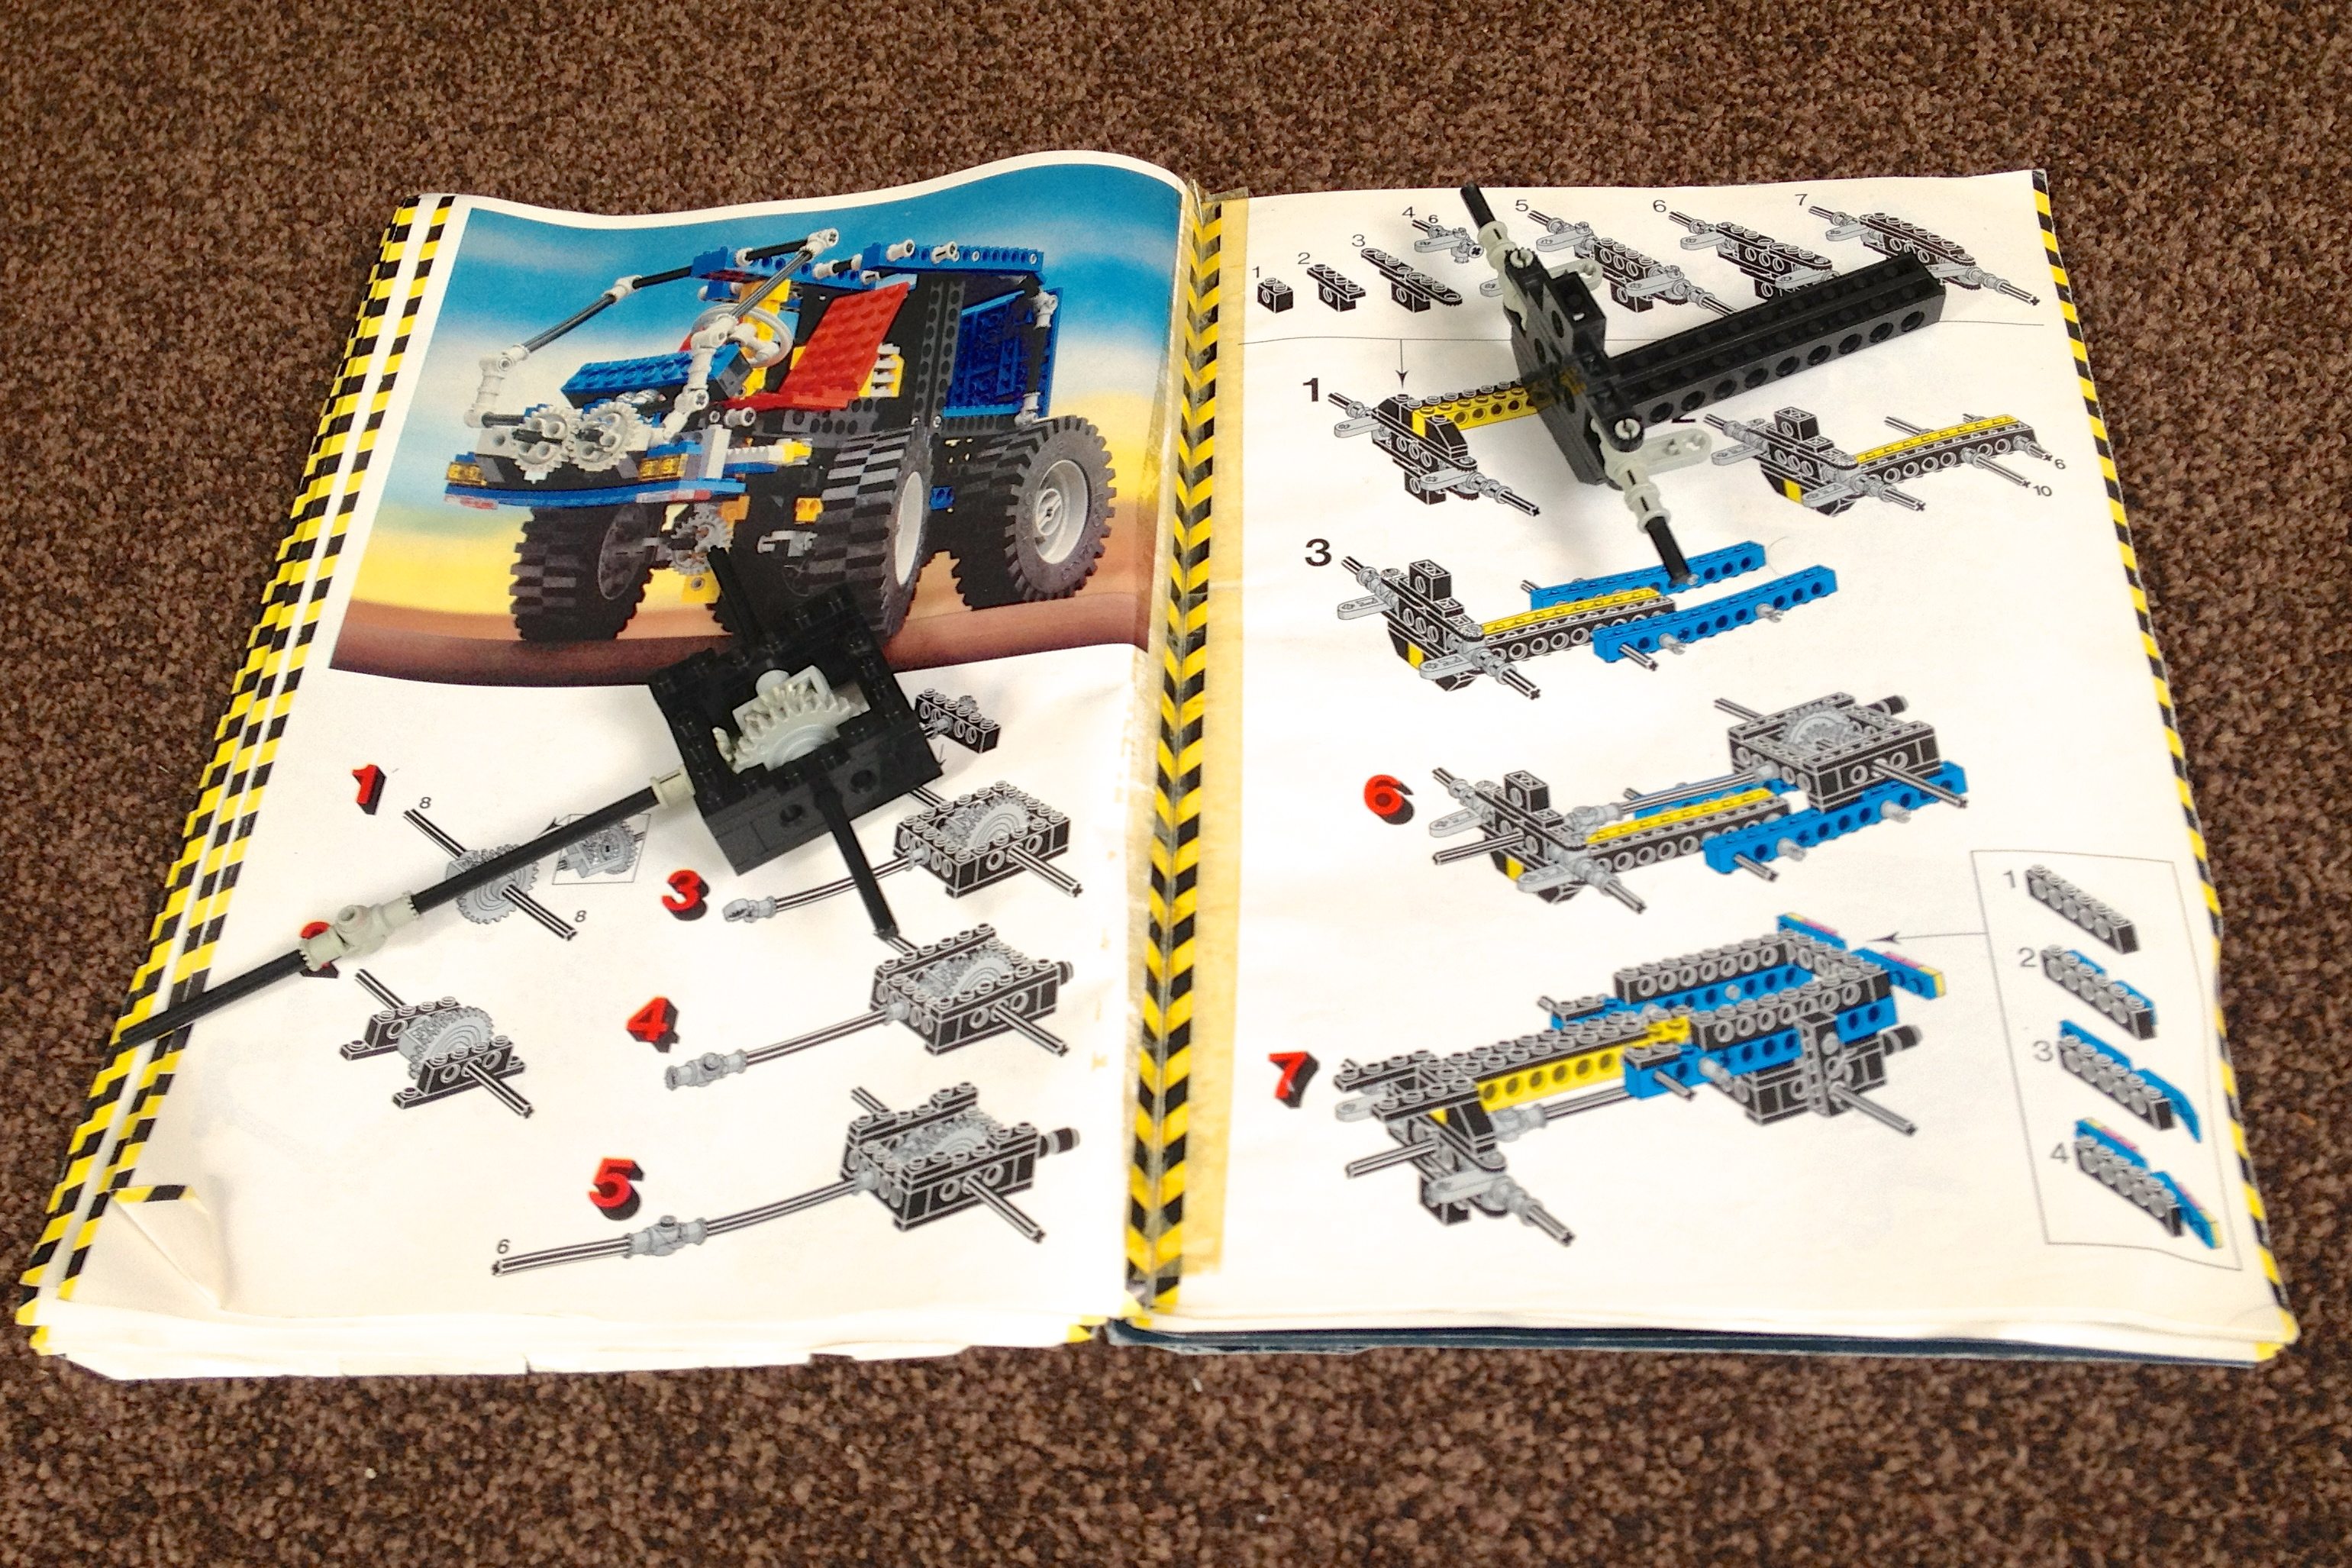 Building a 30 Year-Old Lego Set - GeekDad